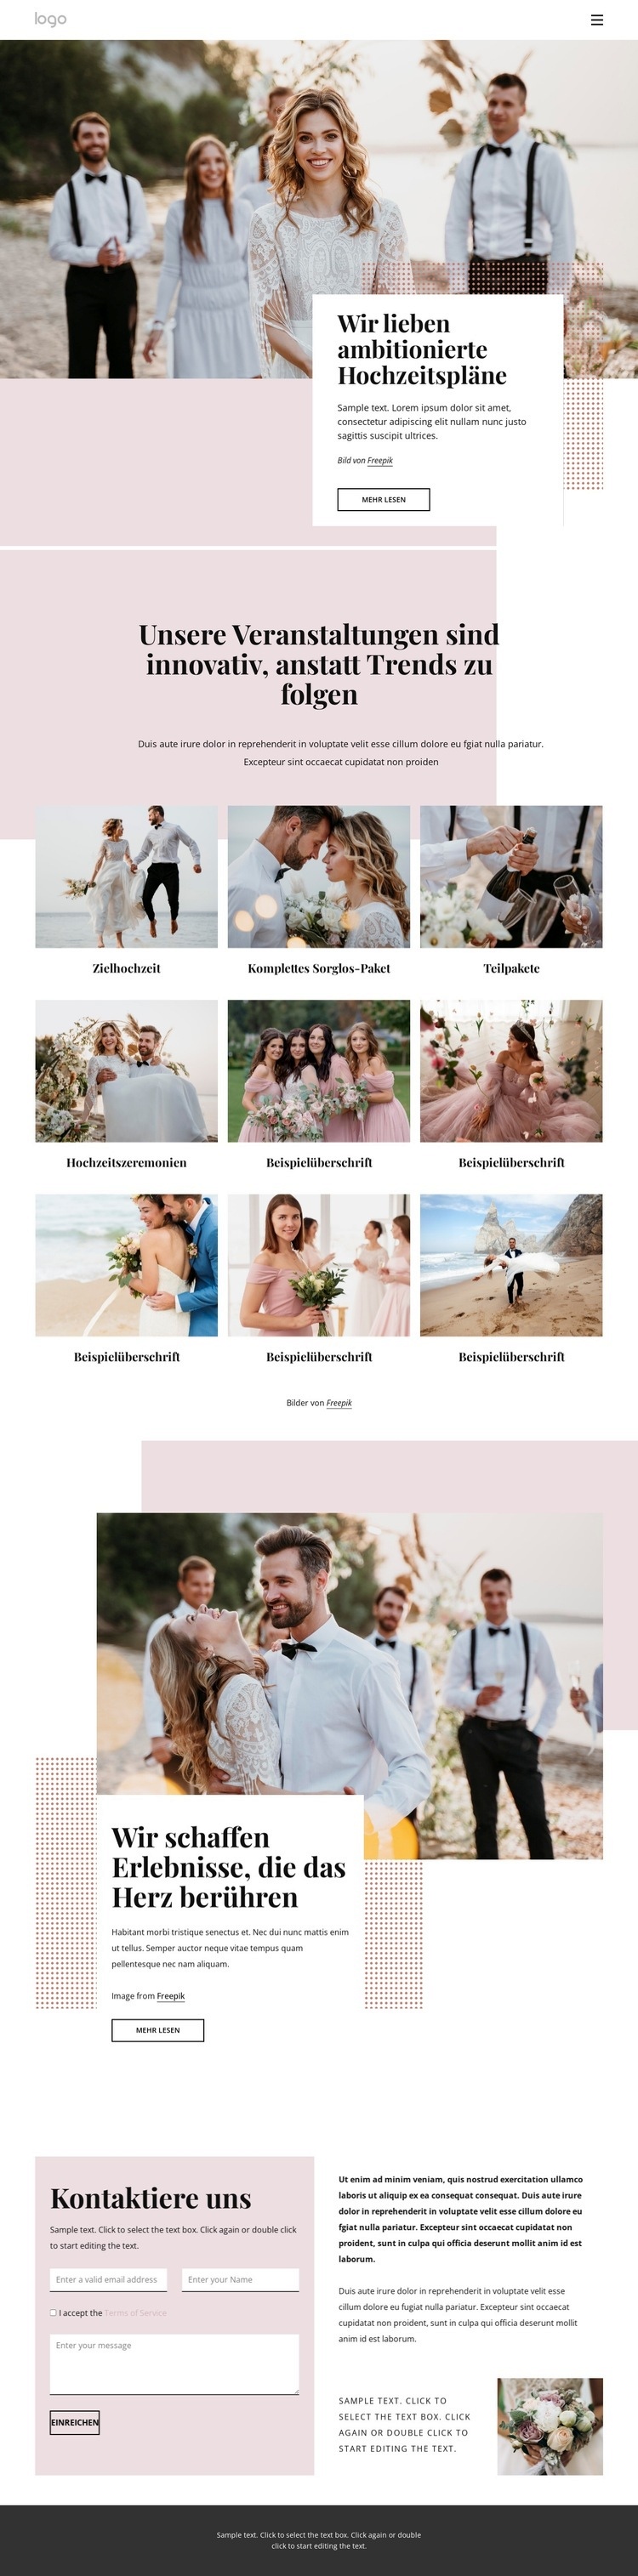 Wir lieben ambitionierte Hochzeitspläne Website design